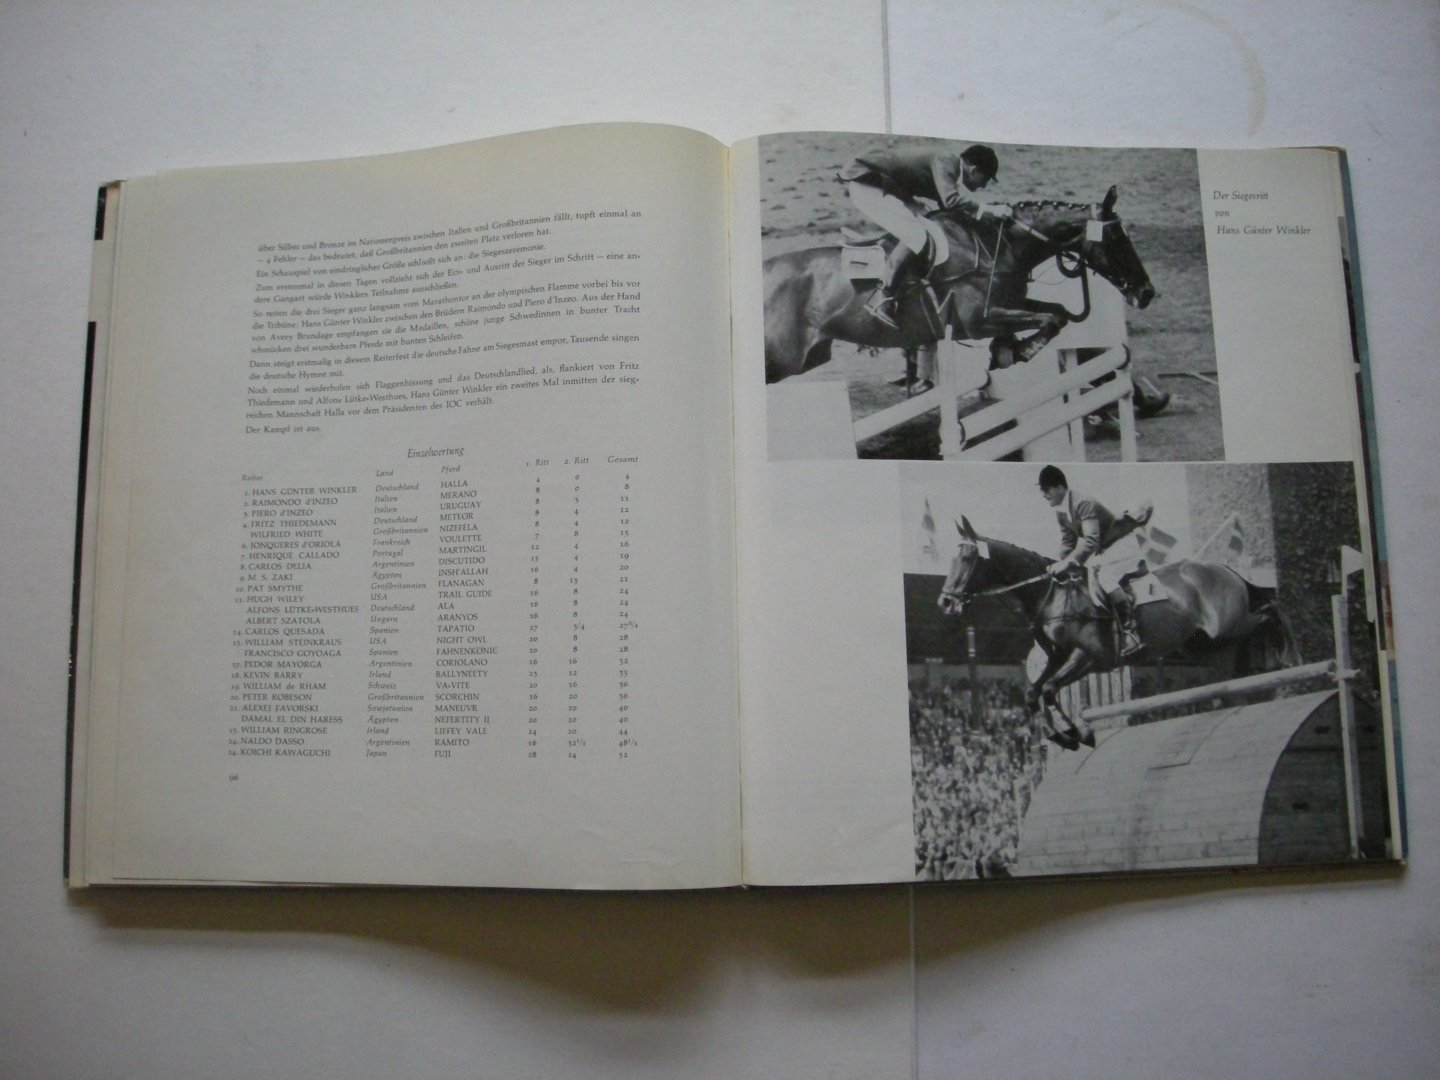 Maegerlein, Heinz / Limpert, W., illustr. - XVI. Olympiade 1956 - Erlebnis und Erinnerung. Band II. IX.Olympische Reiterspiele Stockholm